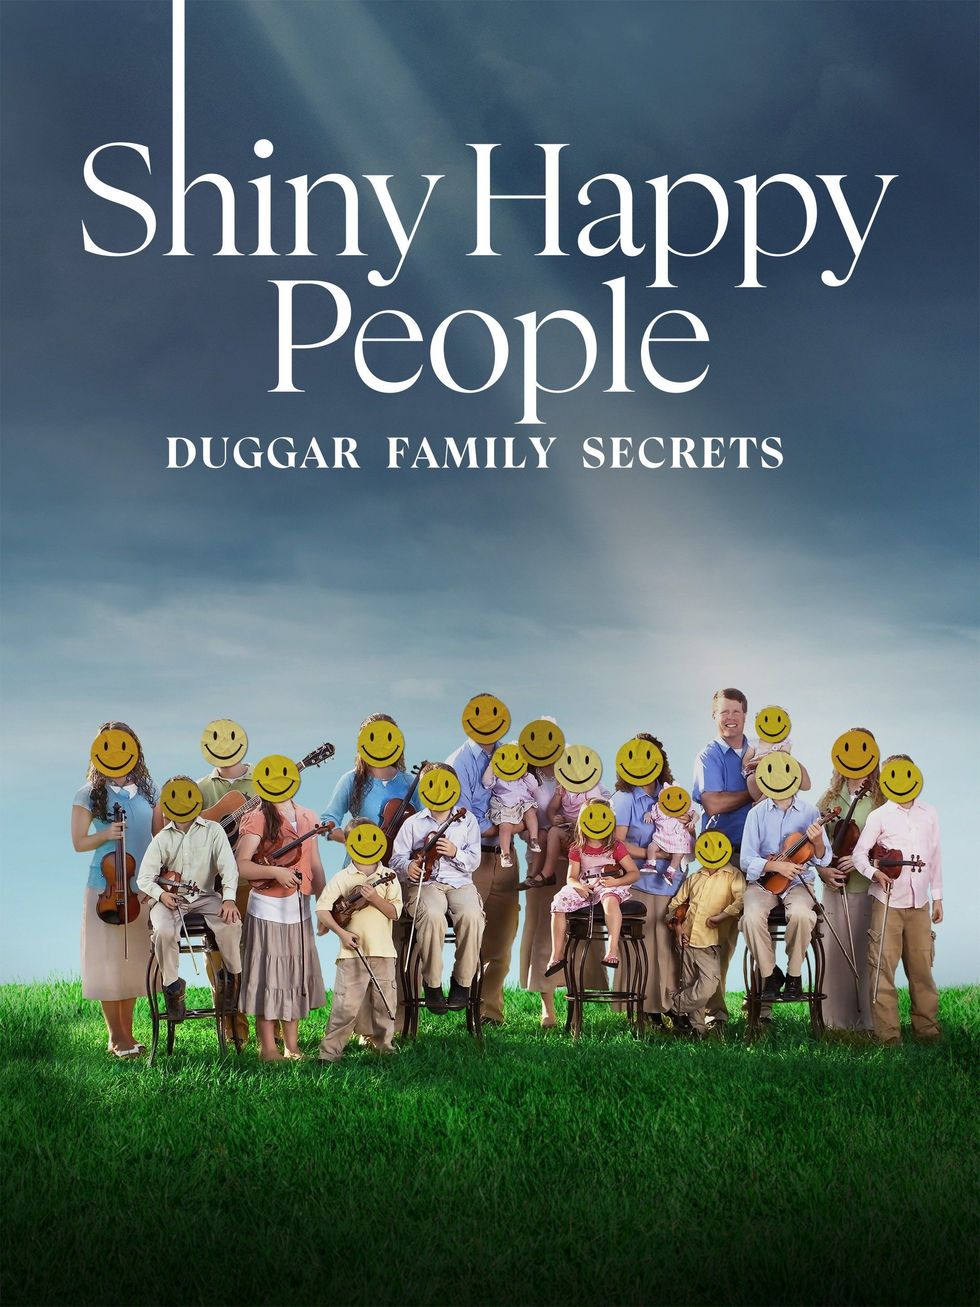 Stream "Shiny Happy People: Duggar Family Secrets"